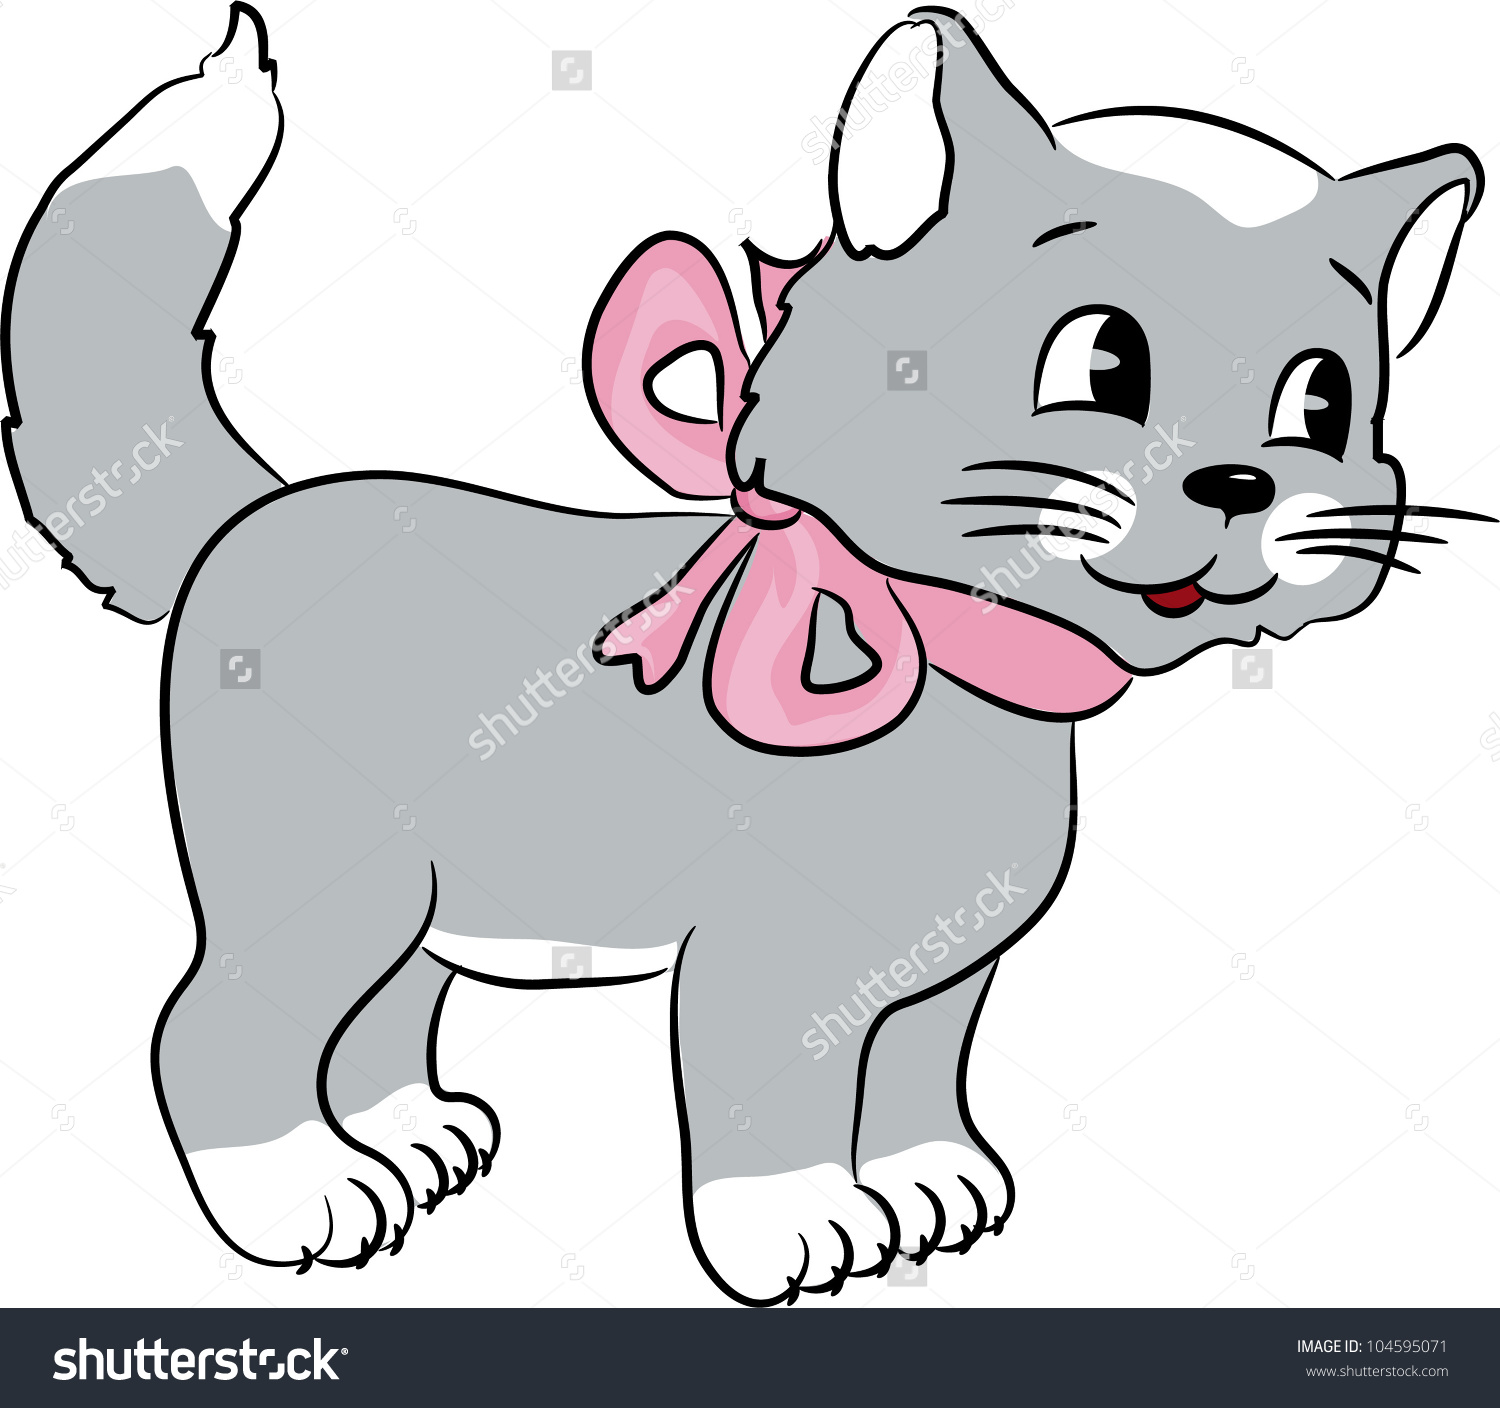 99 Animasi Gambar Kartun Kucing Lucu Dan Imut Gratis Cikimmcom